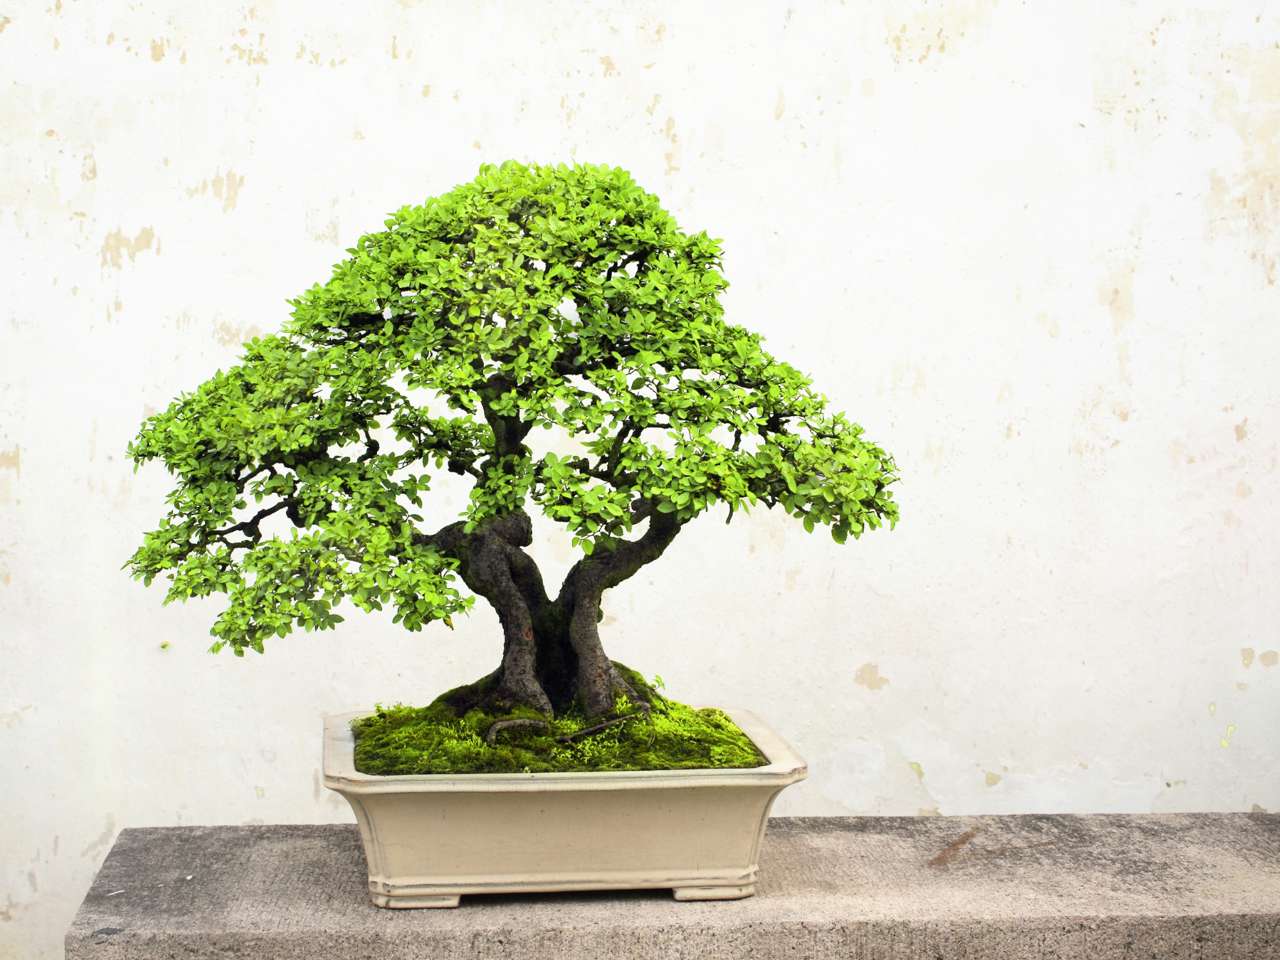 Para el Feng Shui, el bonsái es una planta cargada de significado, pero debes saber dónde colocarla en casa para atraer lo bueno a tu hogar